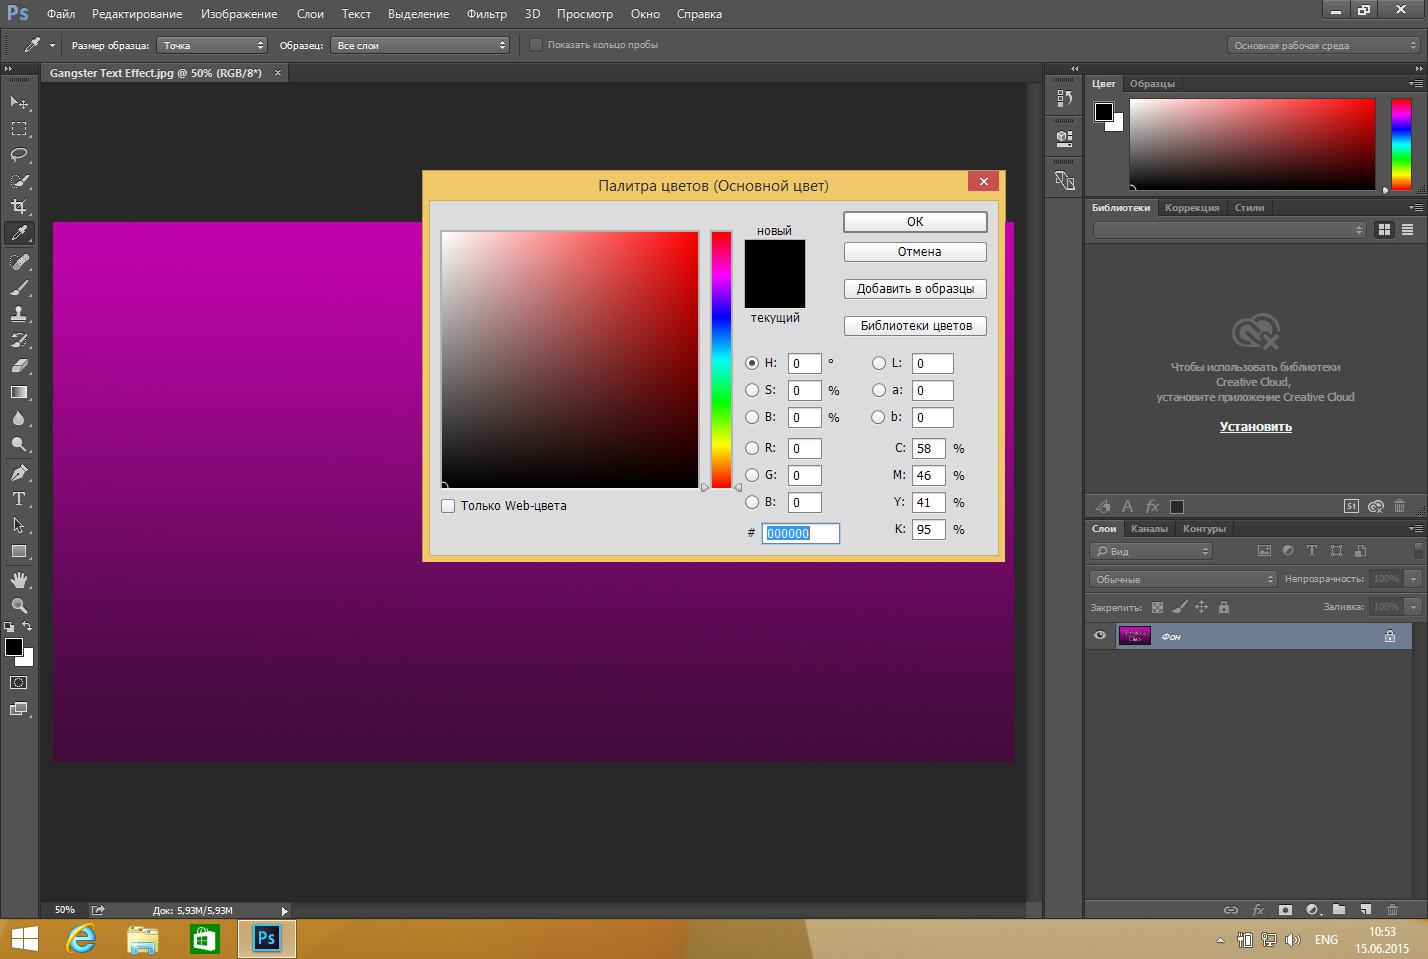 Сайт adobe com. Adobe Photoshop. Цветной фотошоп адоб. Дизайнерские программы фотошоп.